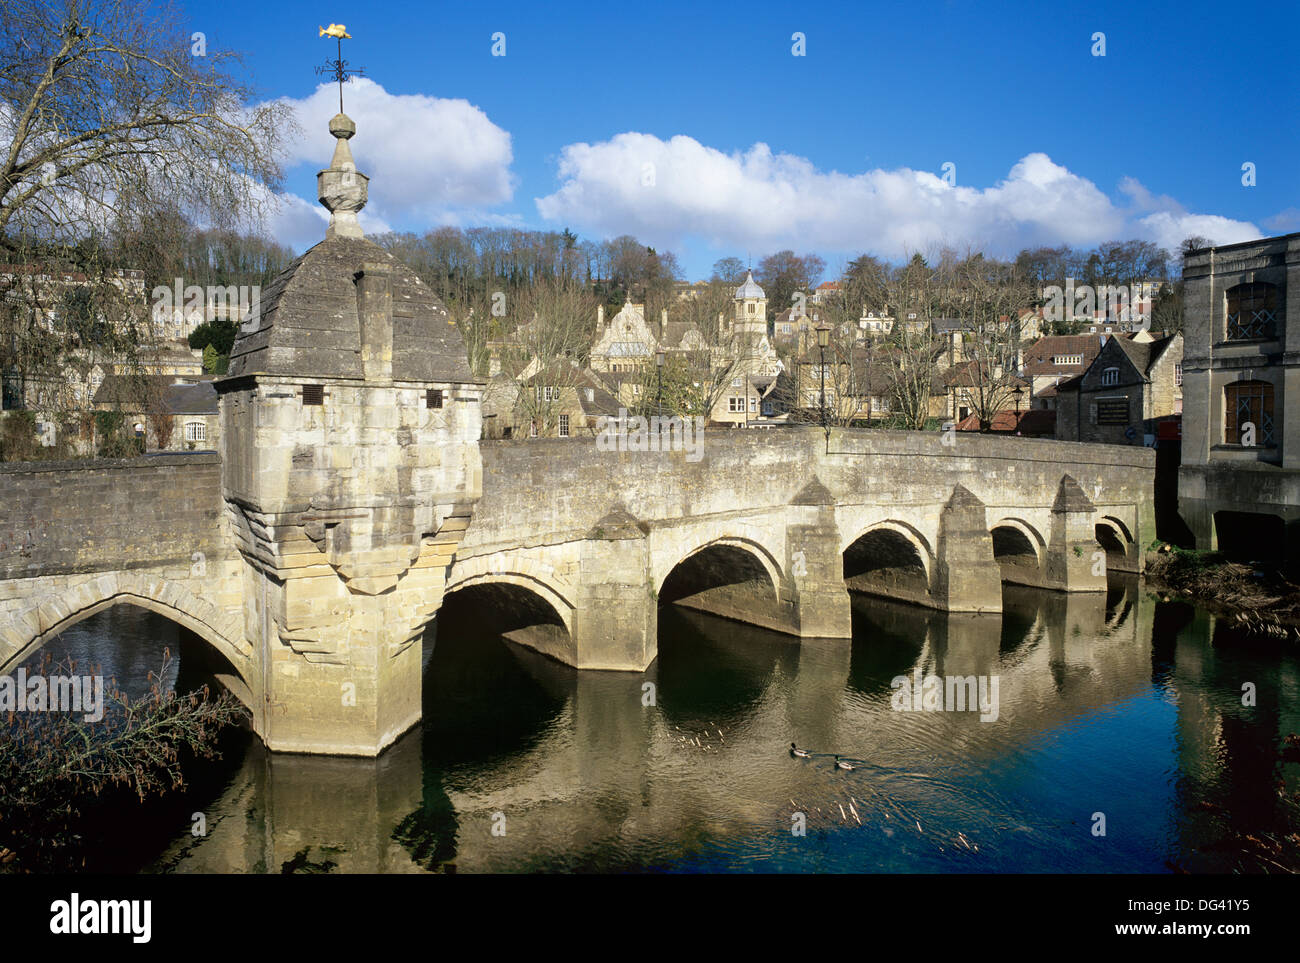 La città ponte sopra il fiume Avon, Bradford on Avon, Wiltshire, Inghilterra, Regno Unito, Europa Foto Stock